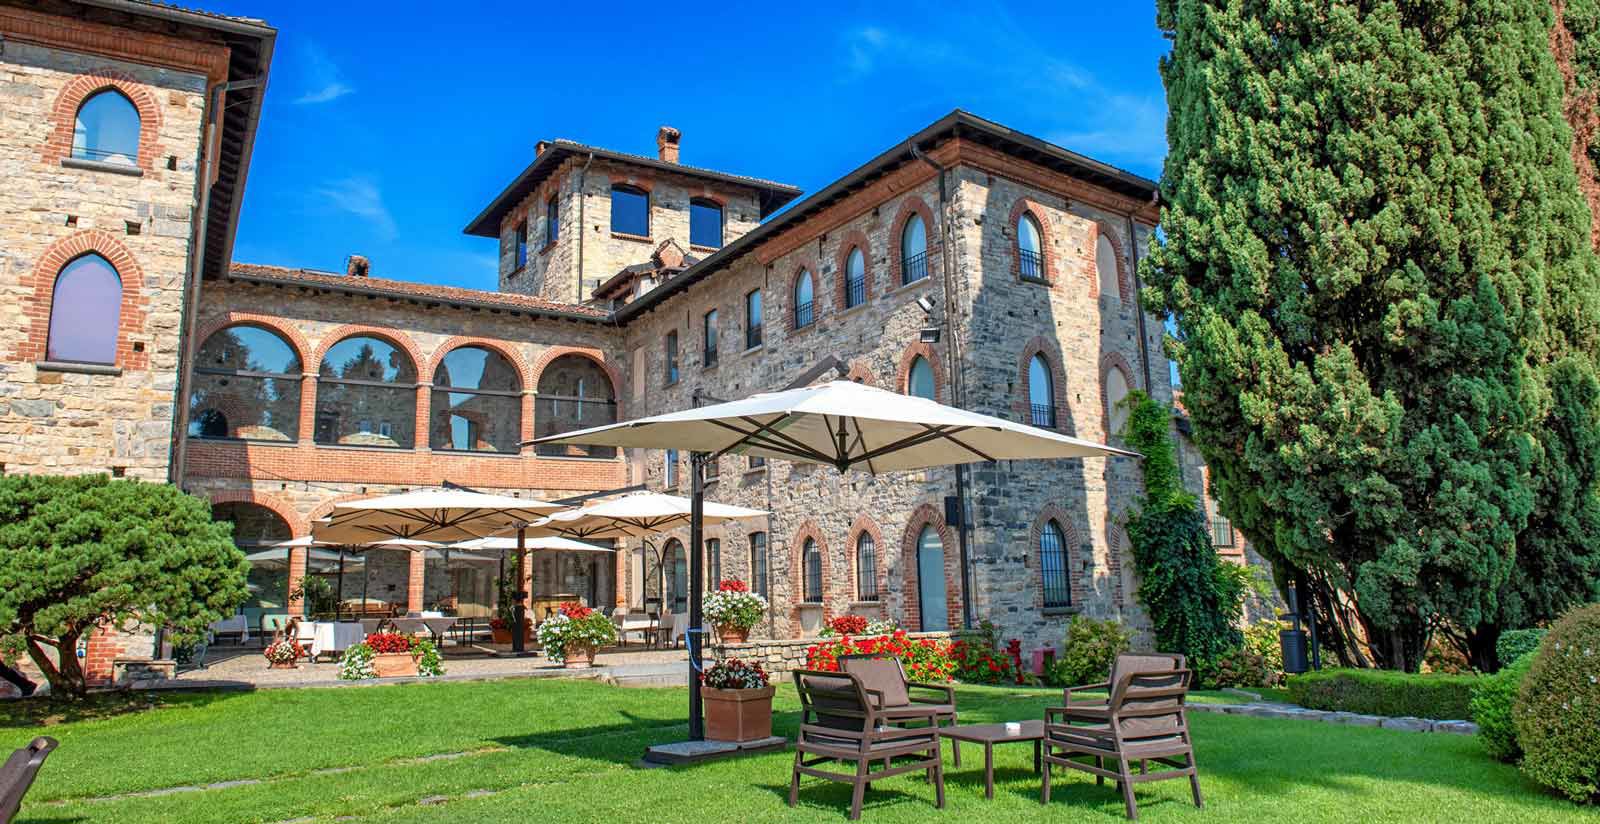 Castello di Casiglio - Castle hotel near Lake Como 4